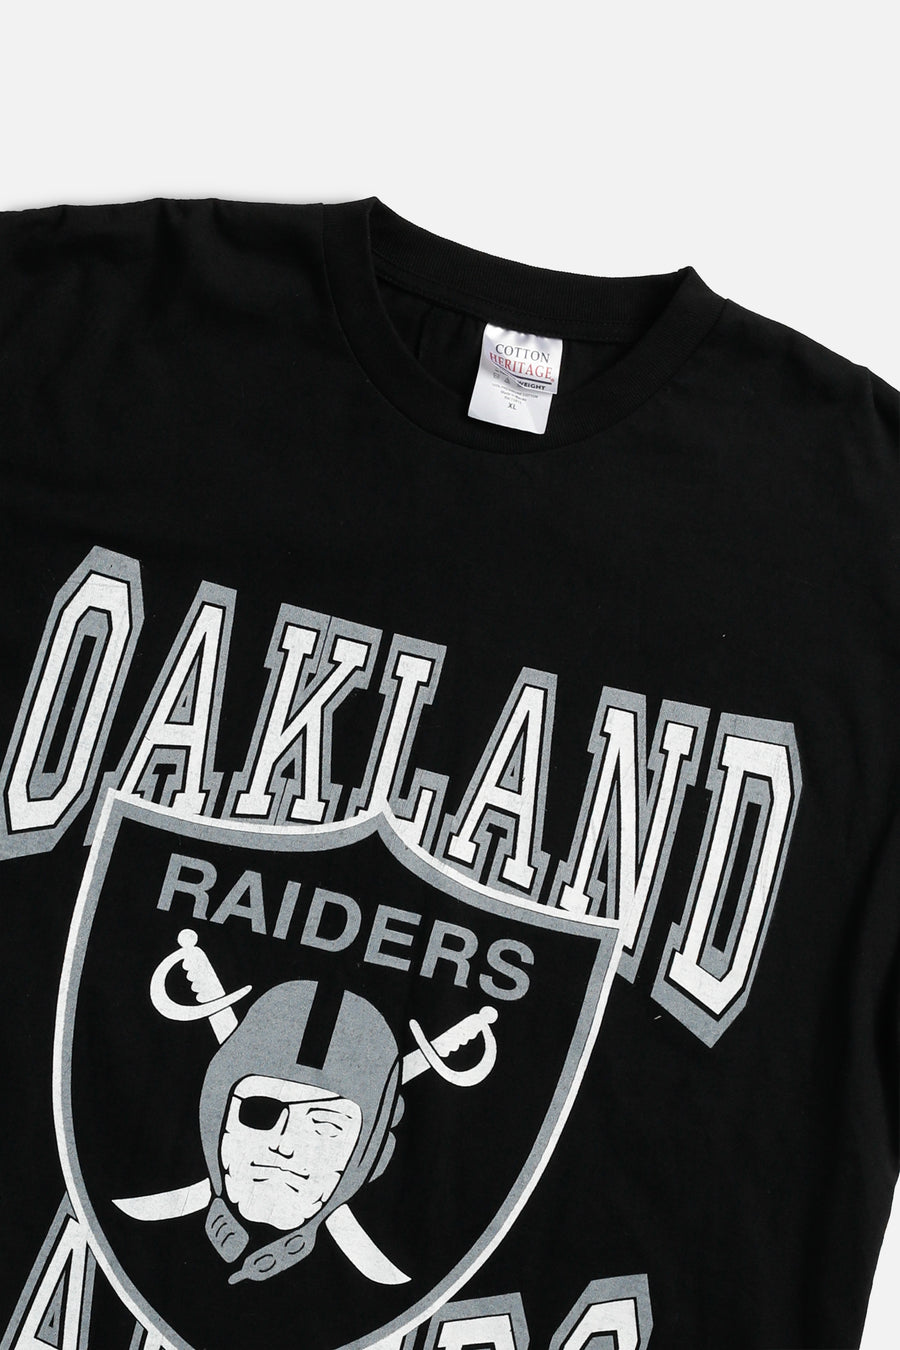 Vintage Oakland Raiders NFL Tee - XL